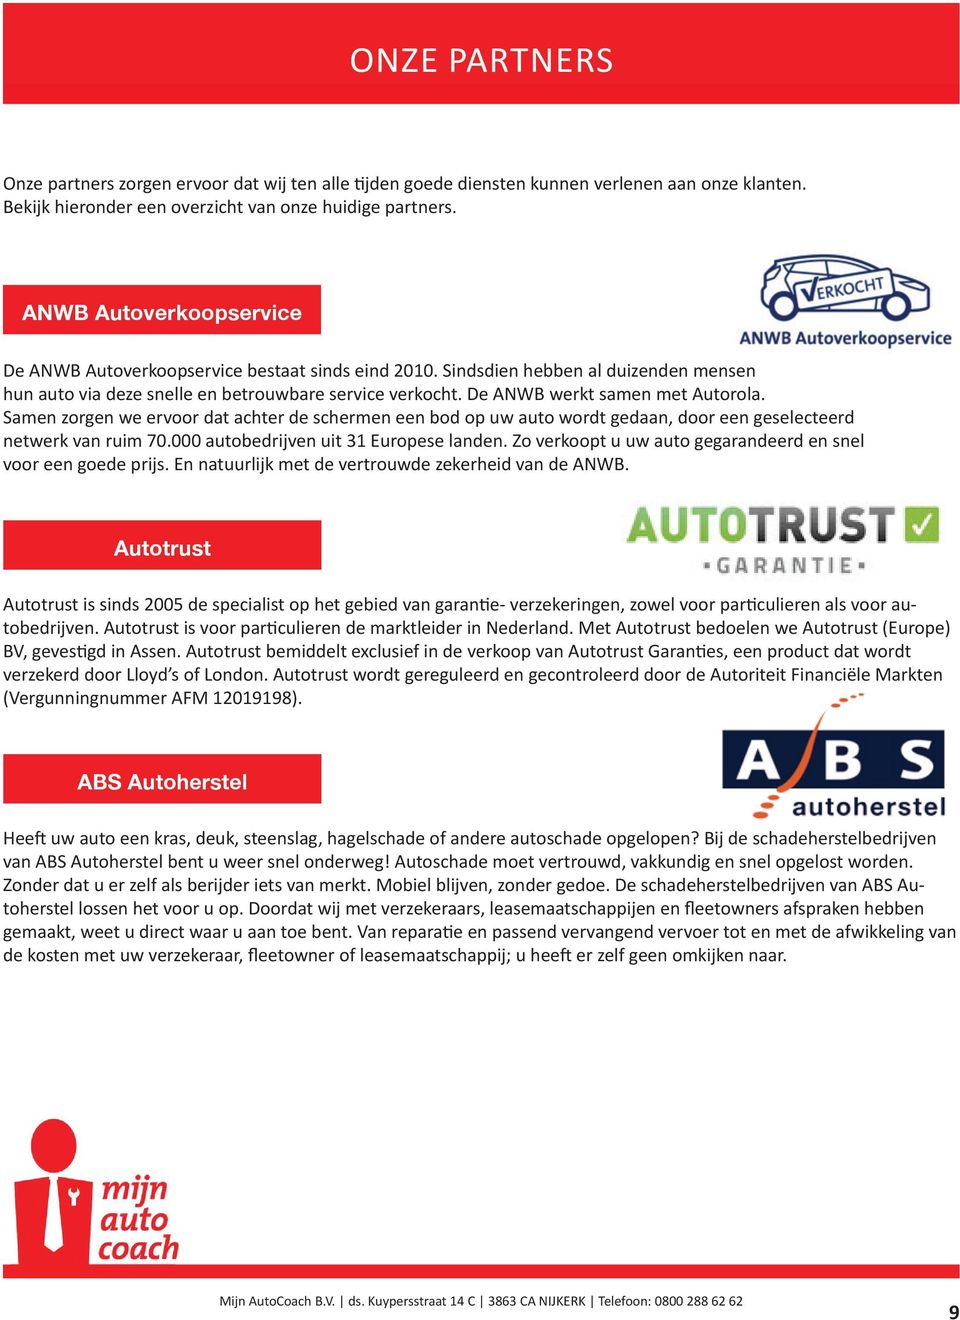 De ANWB werkt samen met Autorola. Samen zorgen we ervoor dat achter de schermen een bod op uw auto wordt gedaan, door een geselecteerd netwerk van ruim 70.000 autobedrijven uit 31 Europese landen.